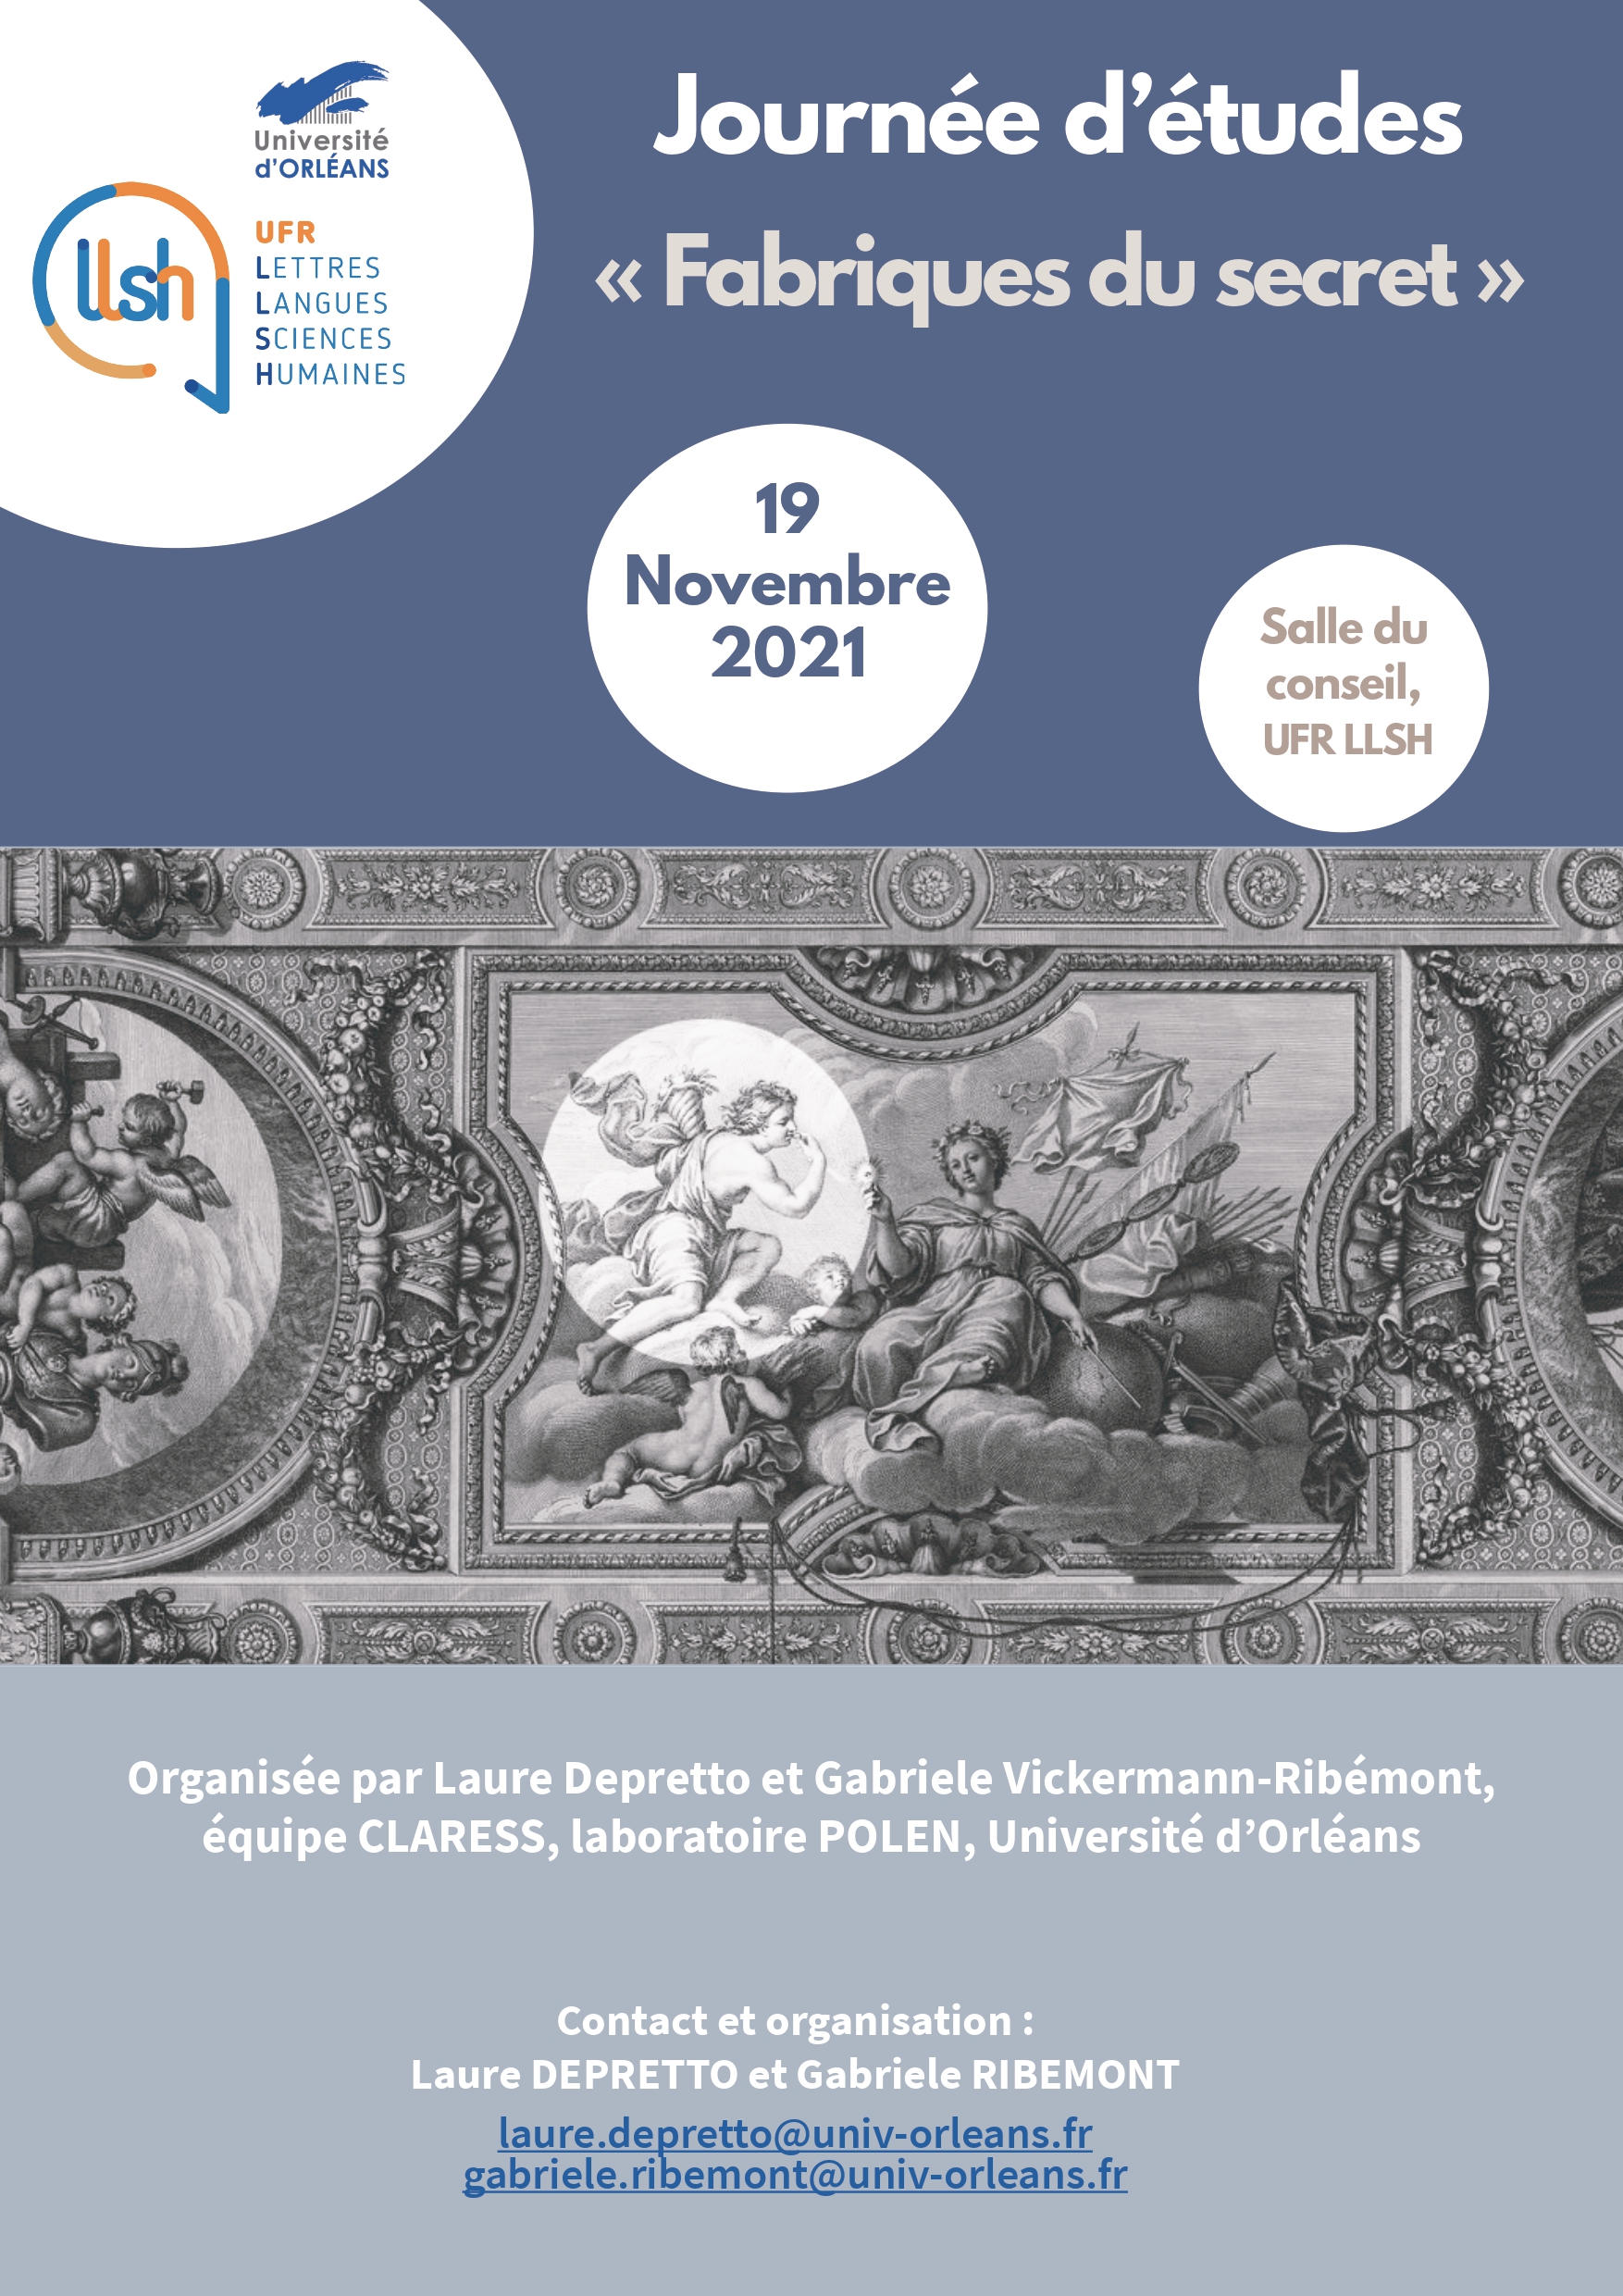 Affiche de la journée d'études "Fabriques du secret", le 19 novembre 2021 en salle du conseil, UFR LLSH, université d'Orléans, à partir de 9h30i.